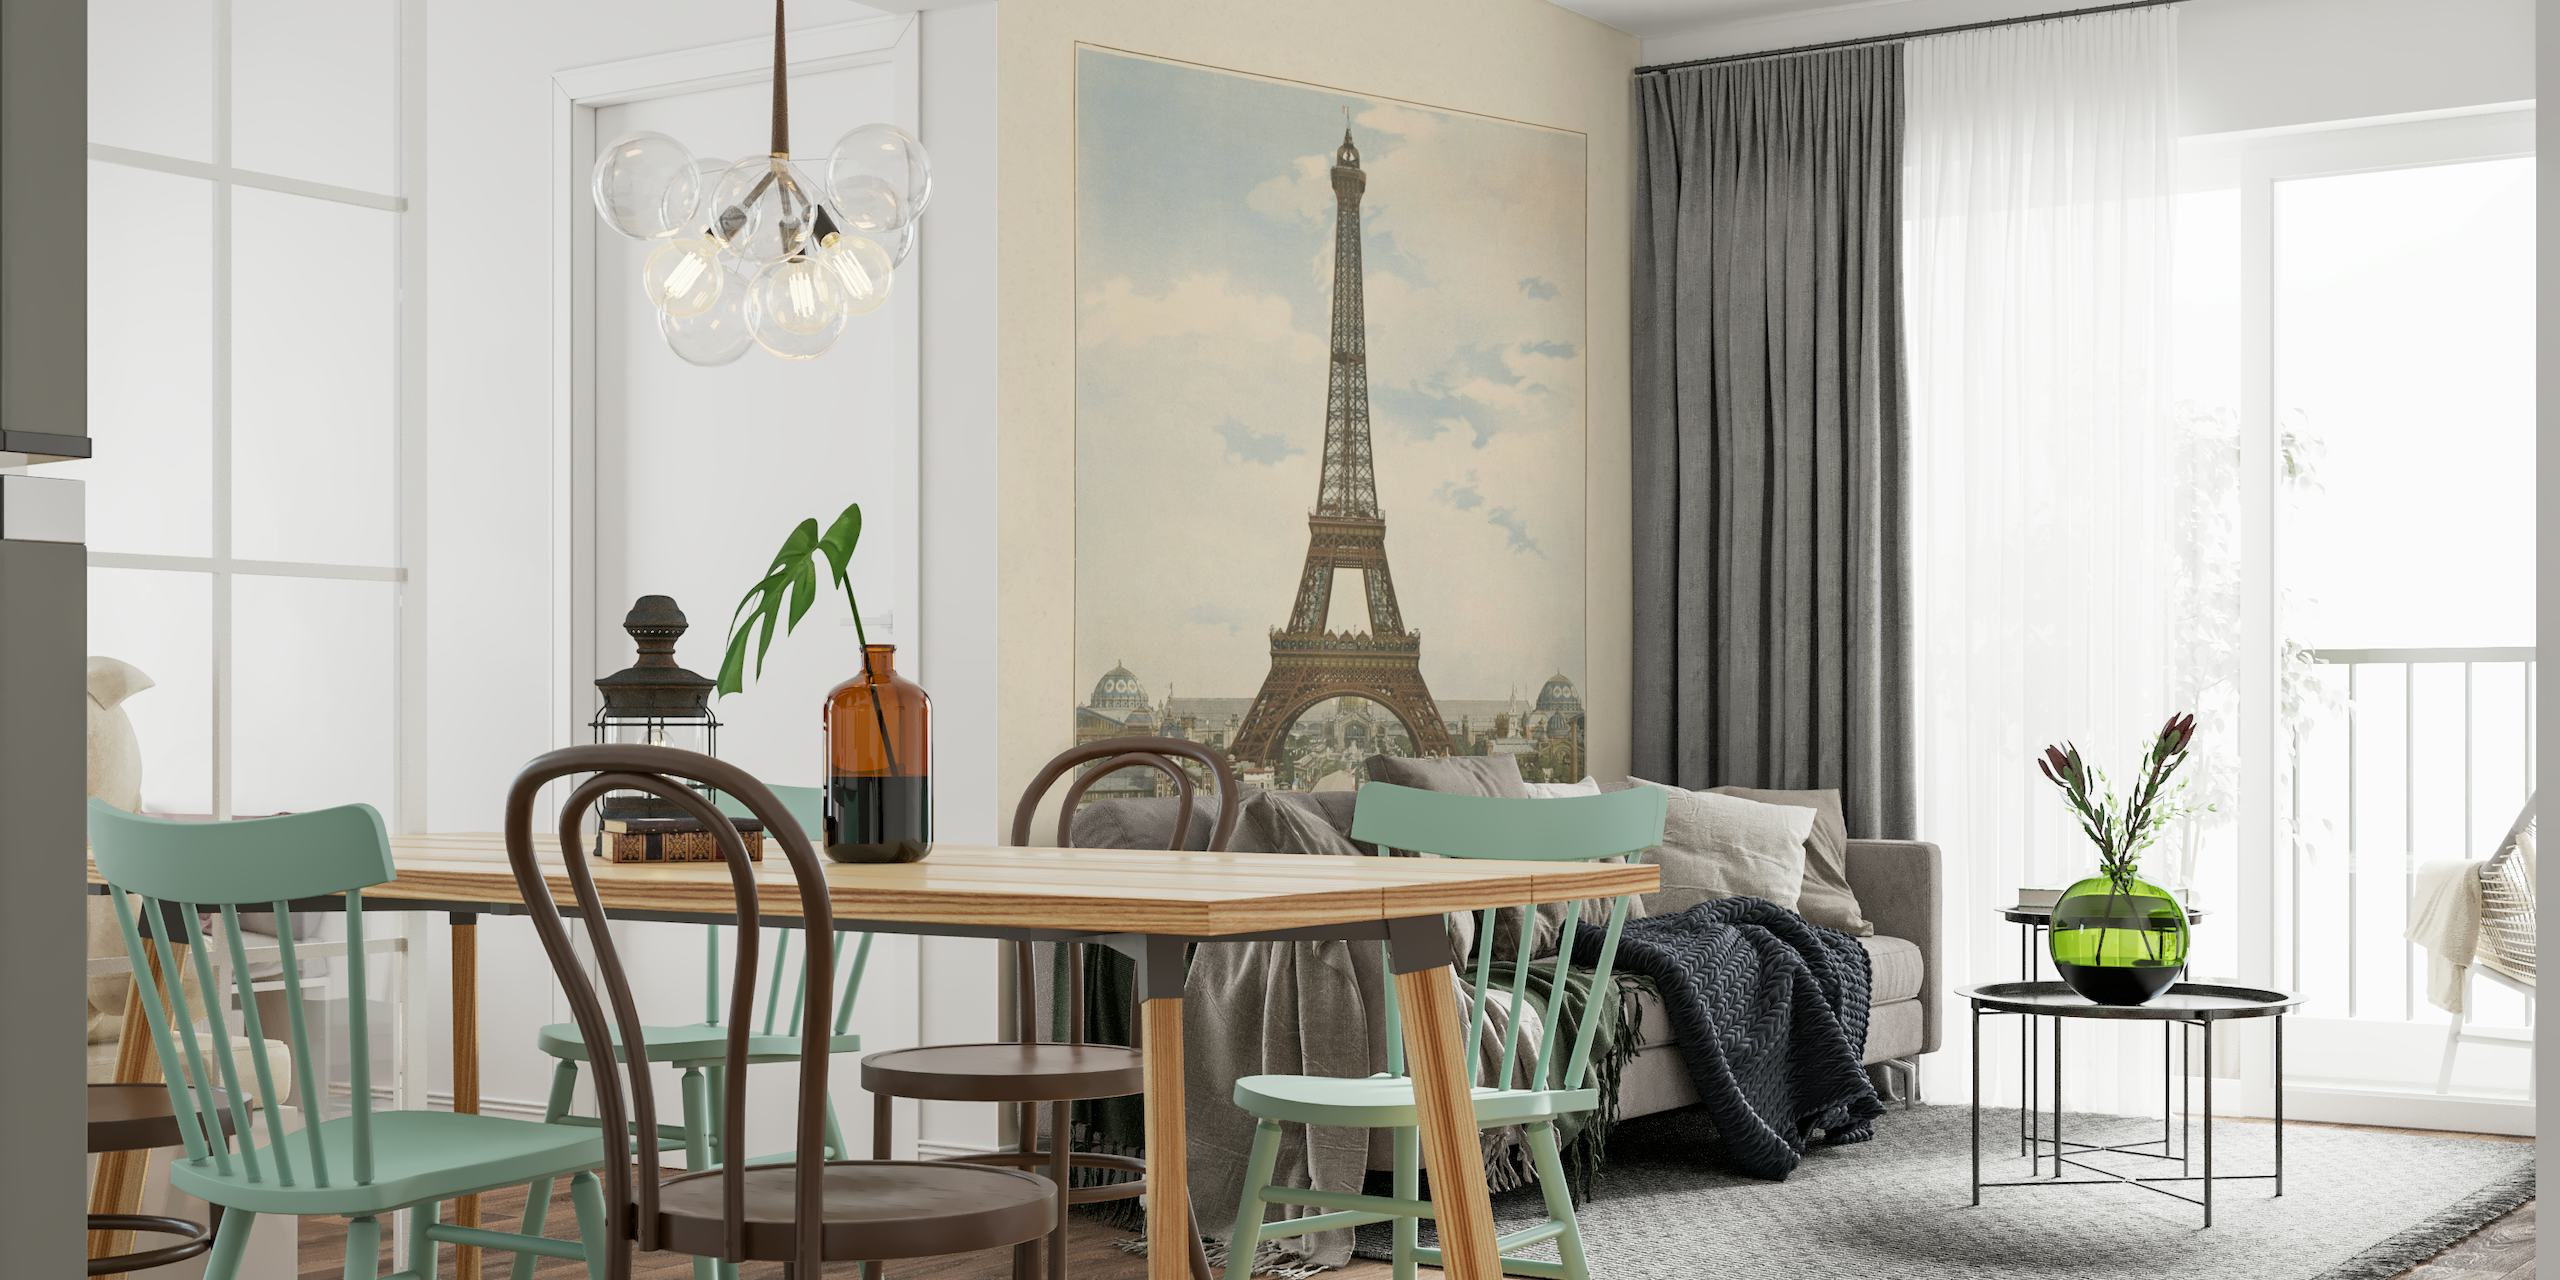 Vintage-tyylinen seinämaalaus Pariisin Eiffel-tornista ympäröivällä arkkitehtuurilla rauhallisen taivaan alla.